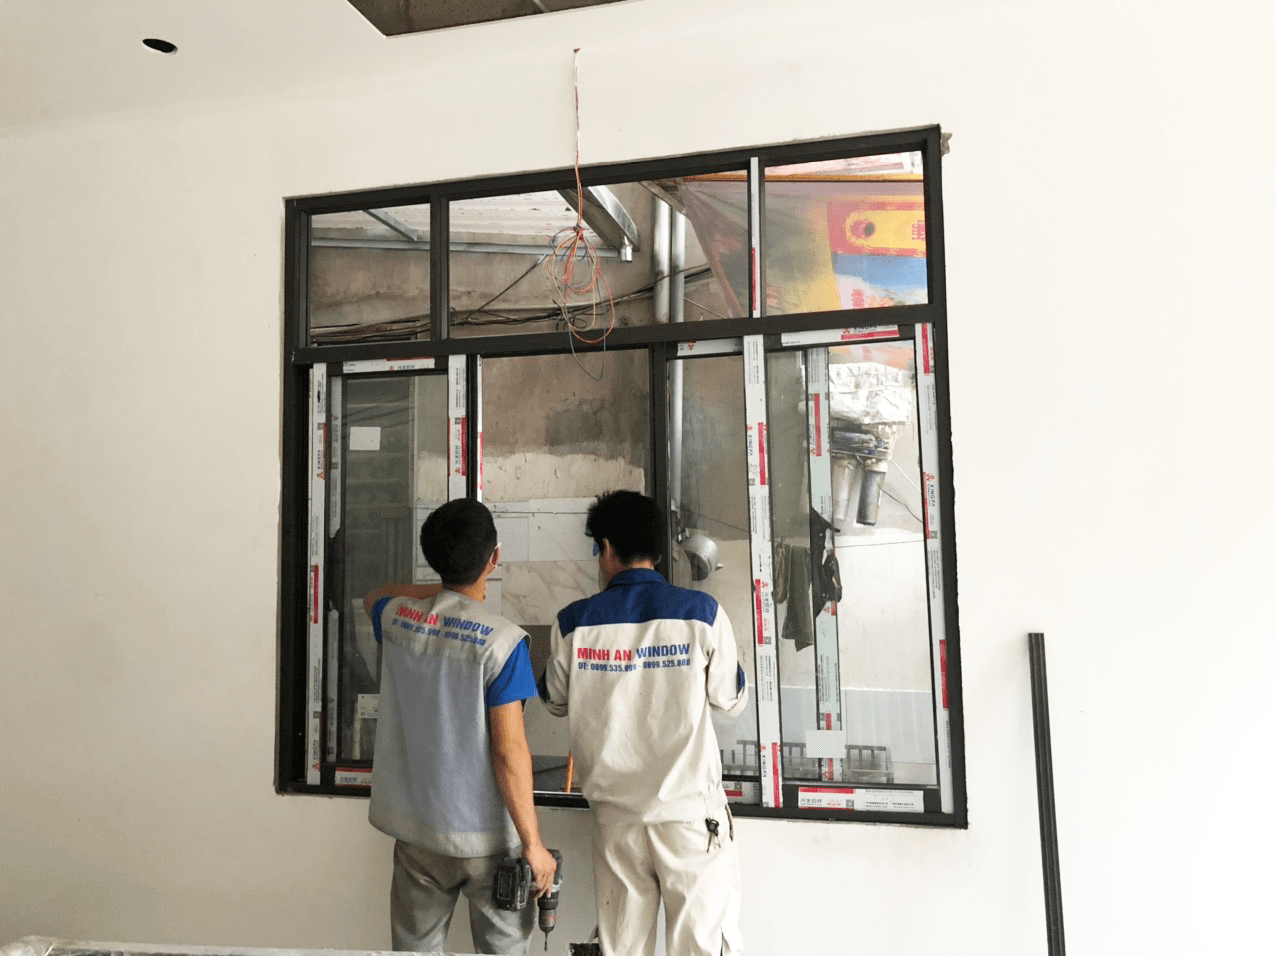 Mẫu cửa sổ nhôm kính làm cho khách hàng tại huyện Quốc Oai - Minh An Window đã thi công